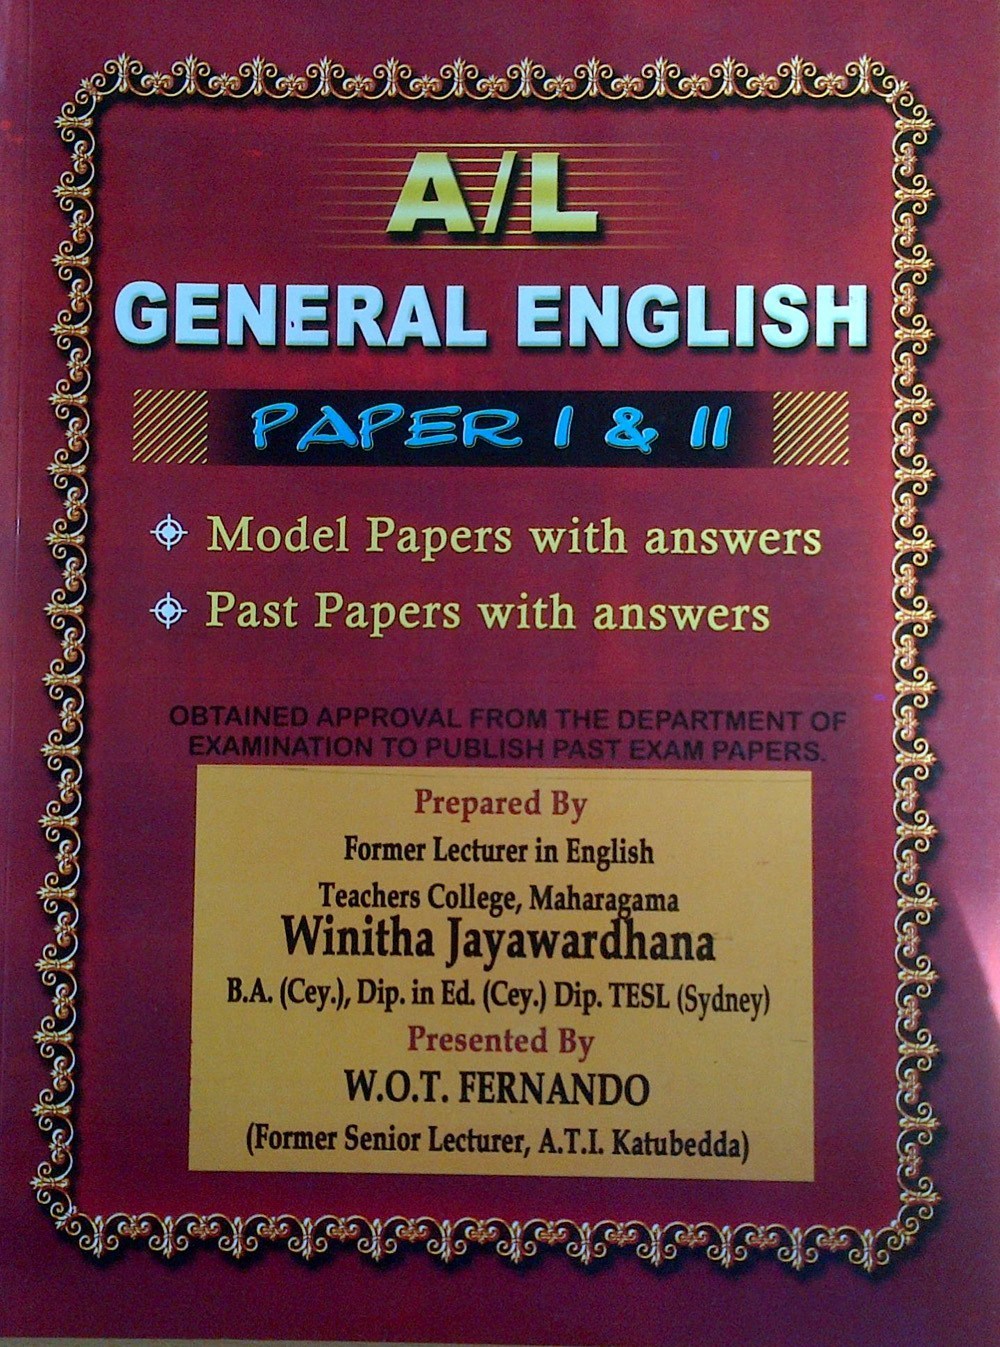 A/L General English Paper 1 & 2